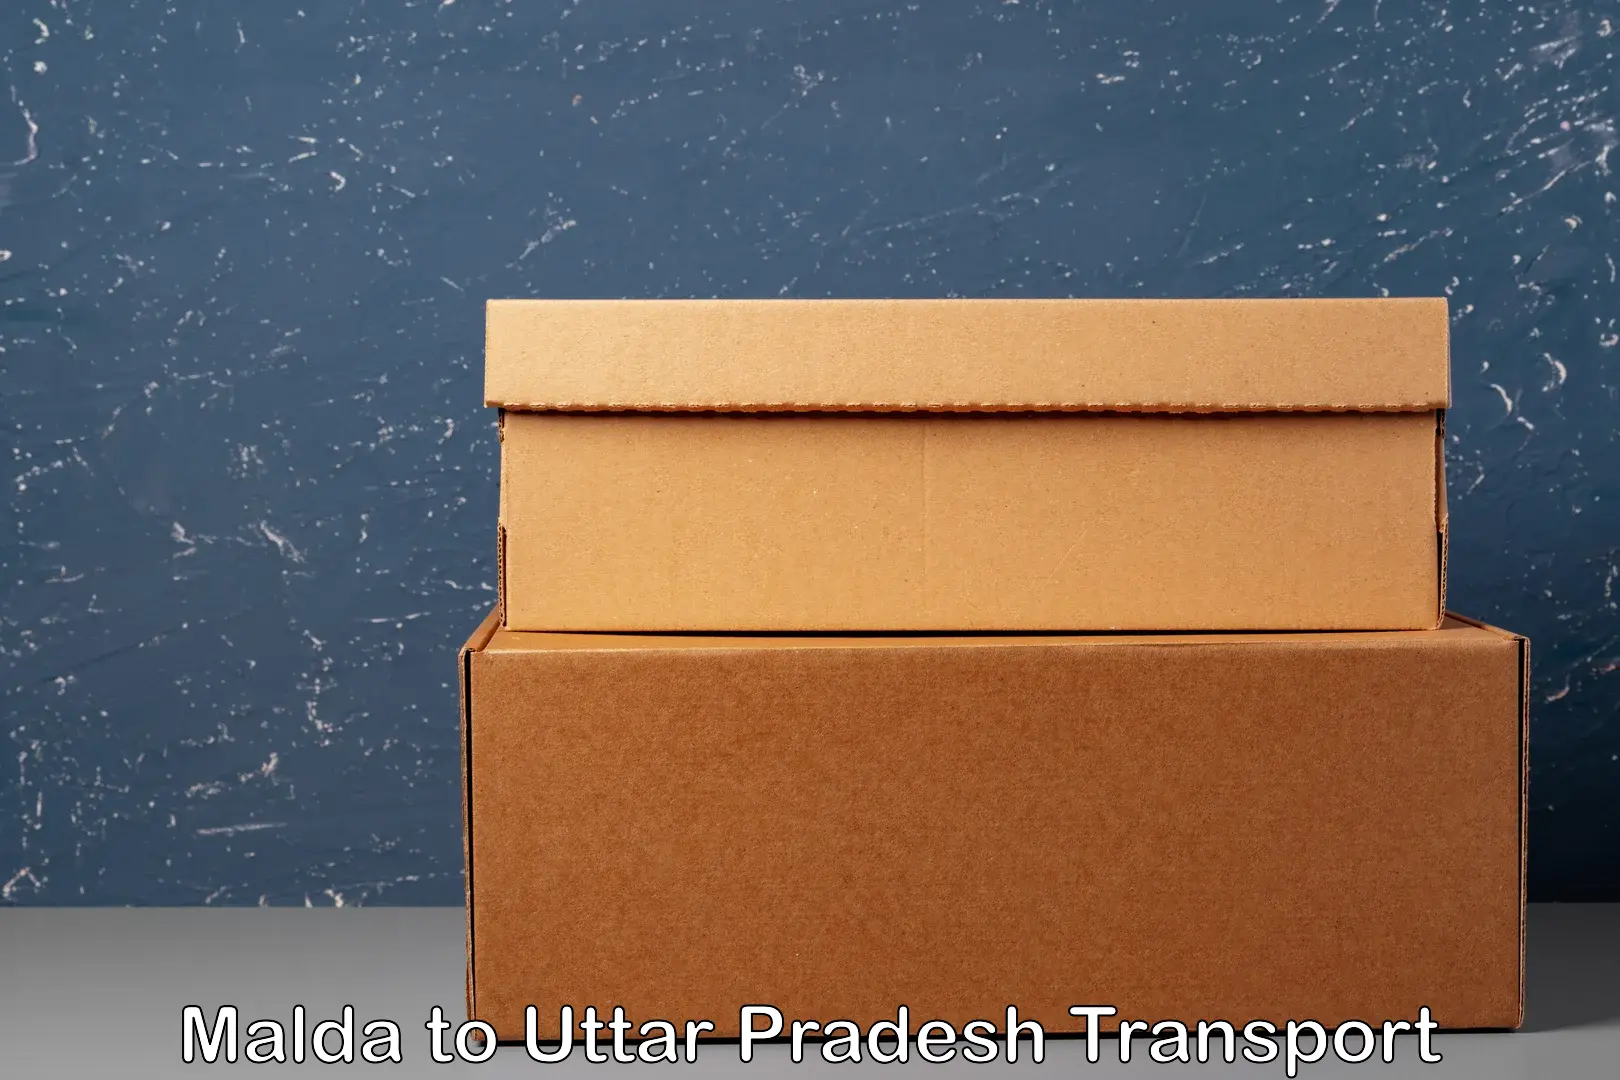 Sending bike to another city Malda to Uttar Pradesh